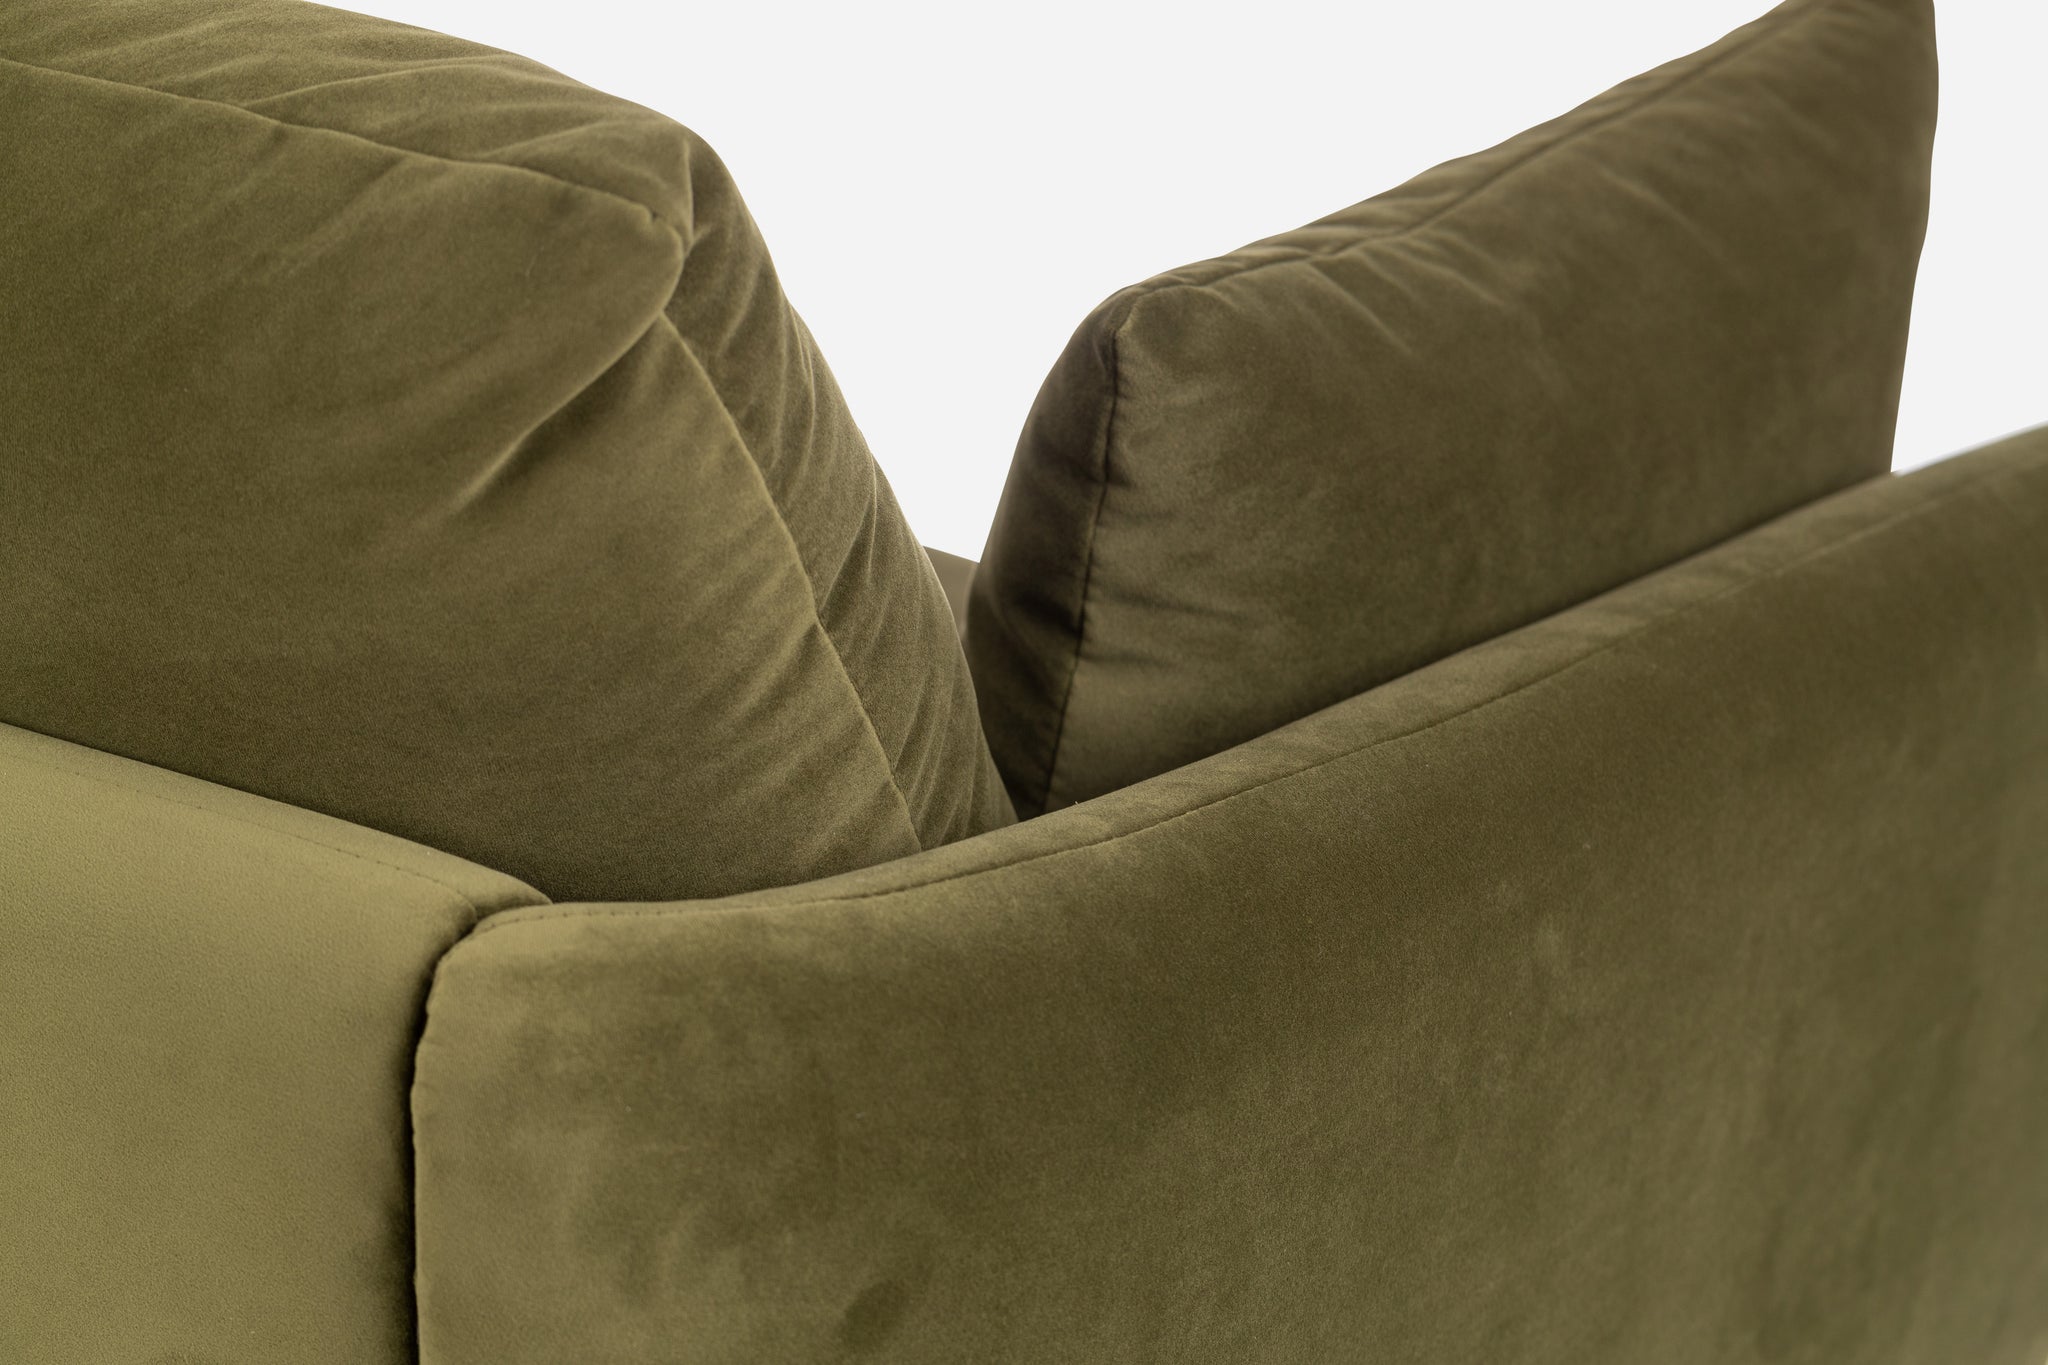 park sofa shown in olive velvet with gold legs